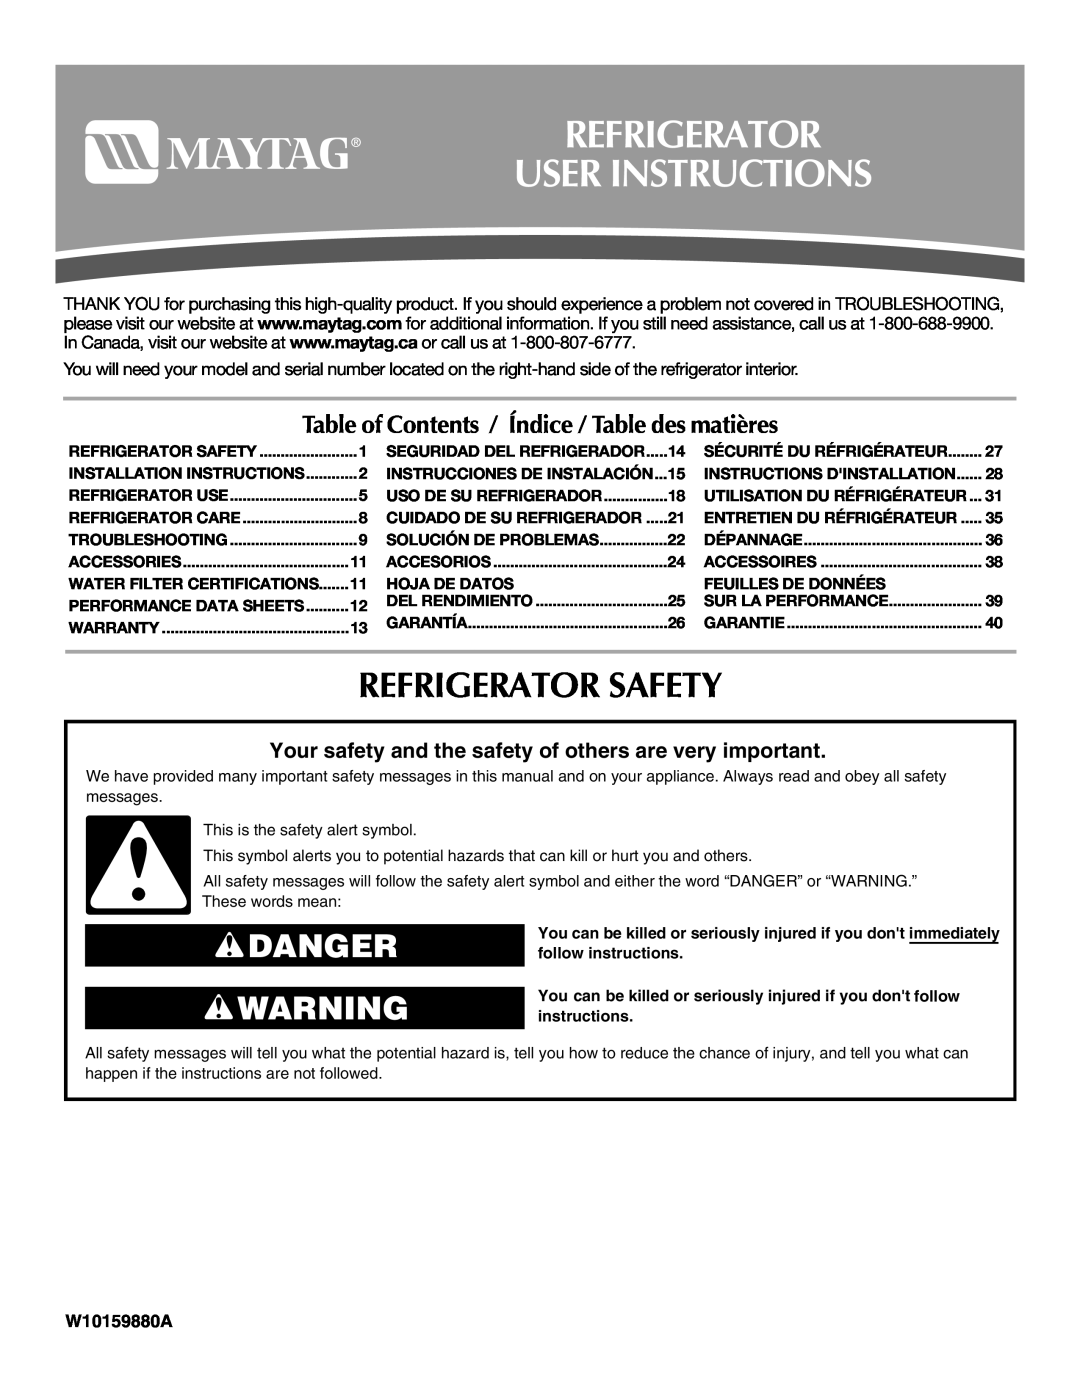 Maytag T1WG2L, T2RFWG2 installation instructions Refrigerator User Instructions, Refrigerator Safety, Danger, W10159880A 